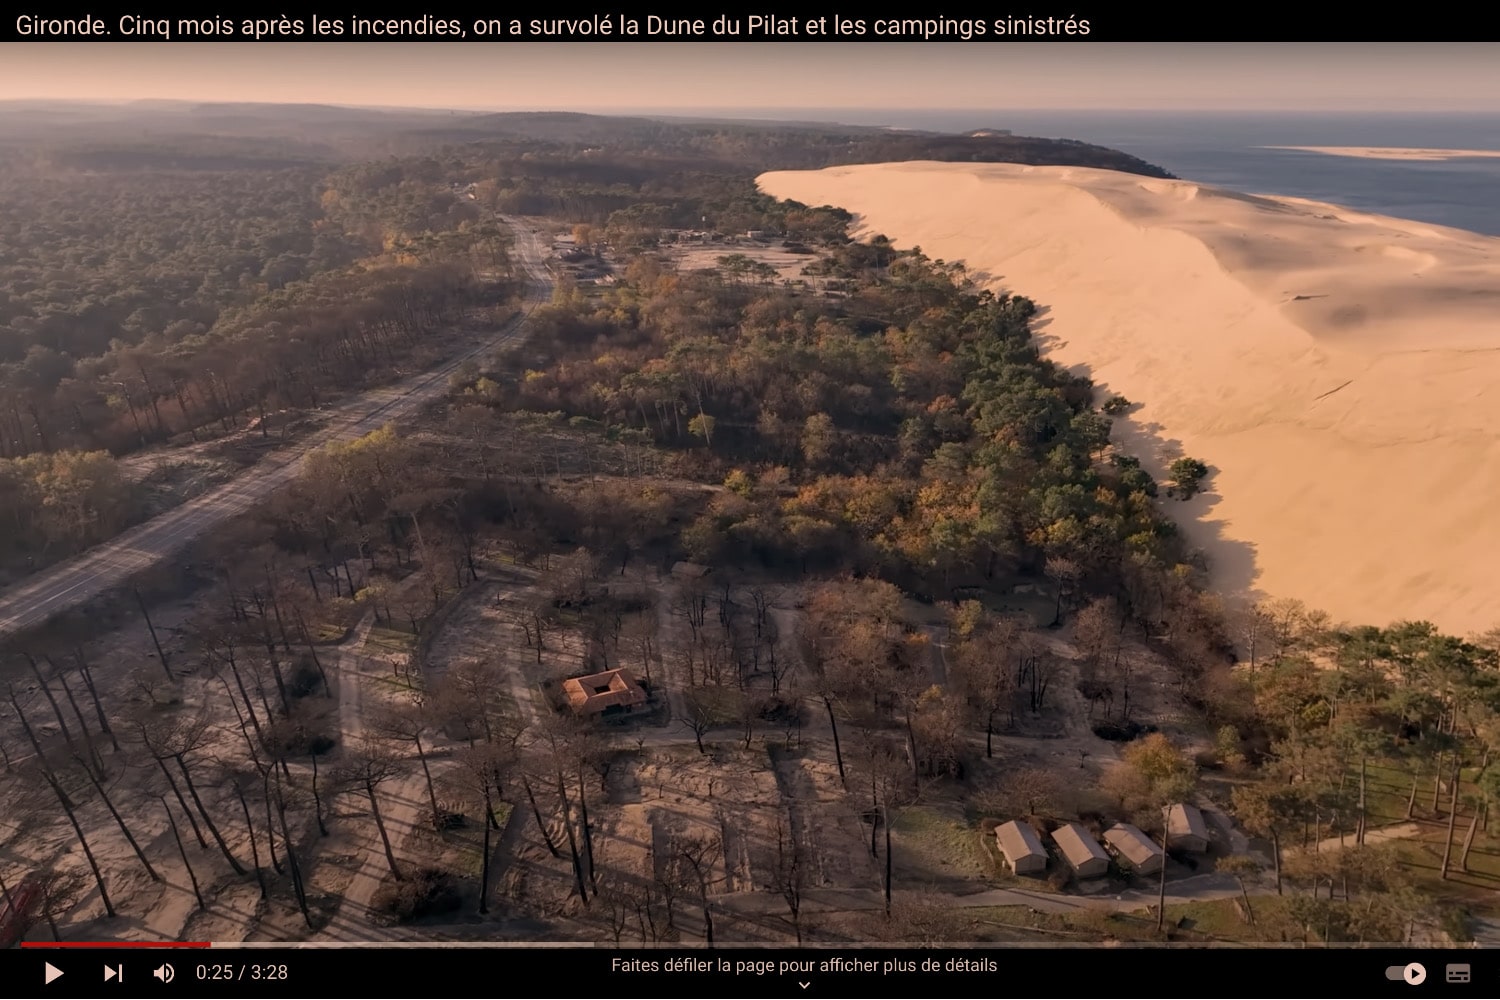 Survol de la Dune du Pilat et de la forêt sinistrée de la Teste-de-Buch après les incendies de l’été dernier par Sud Ouest